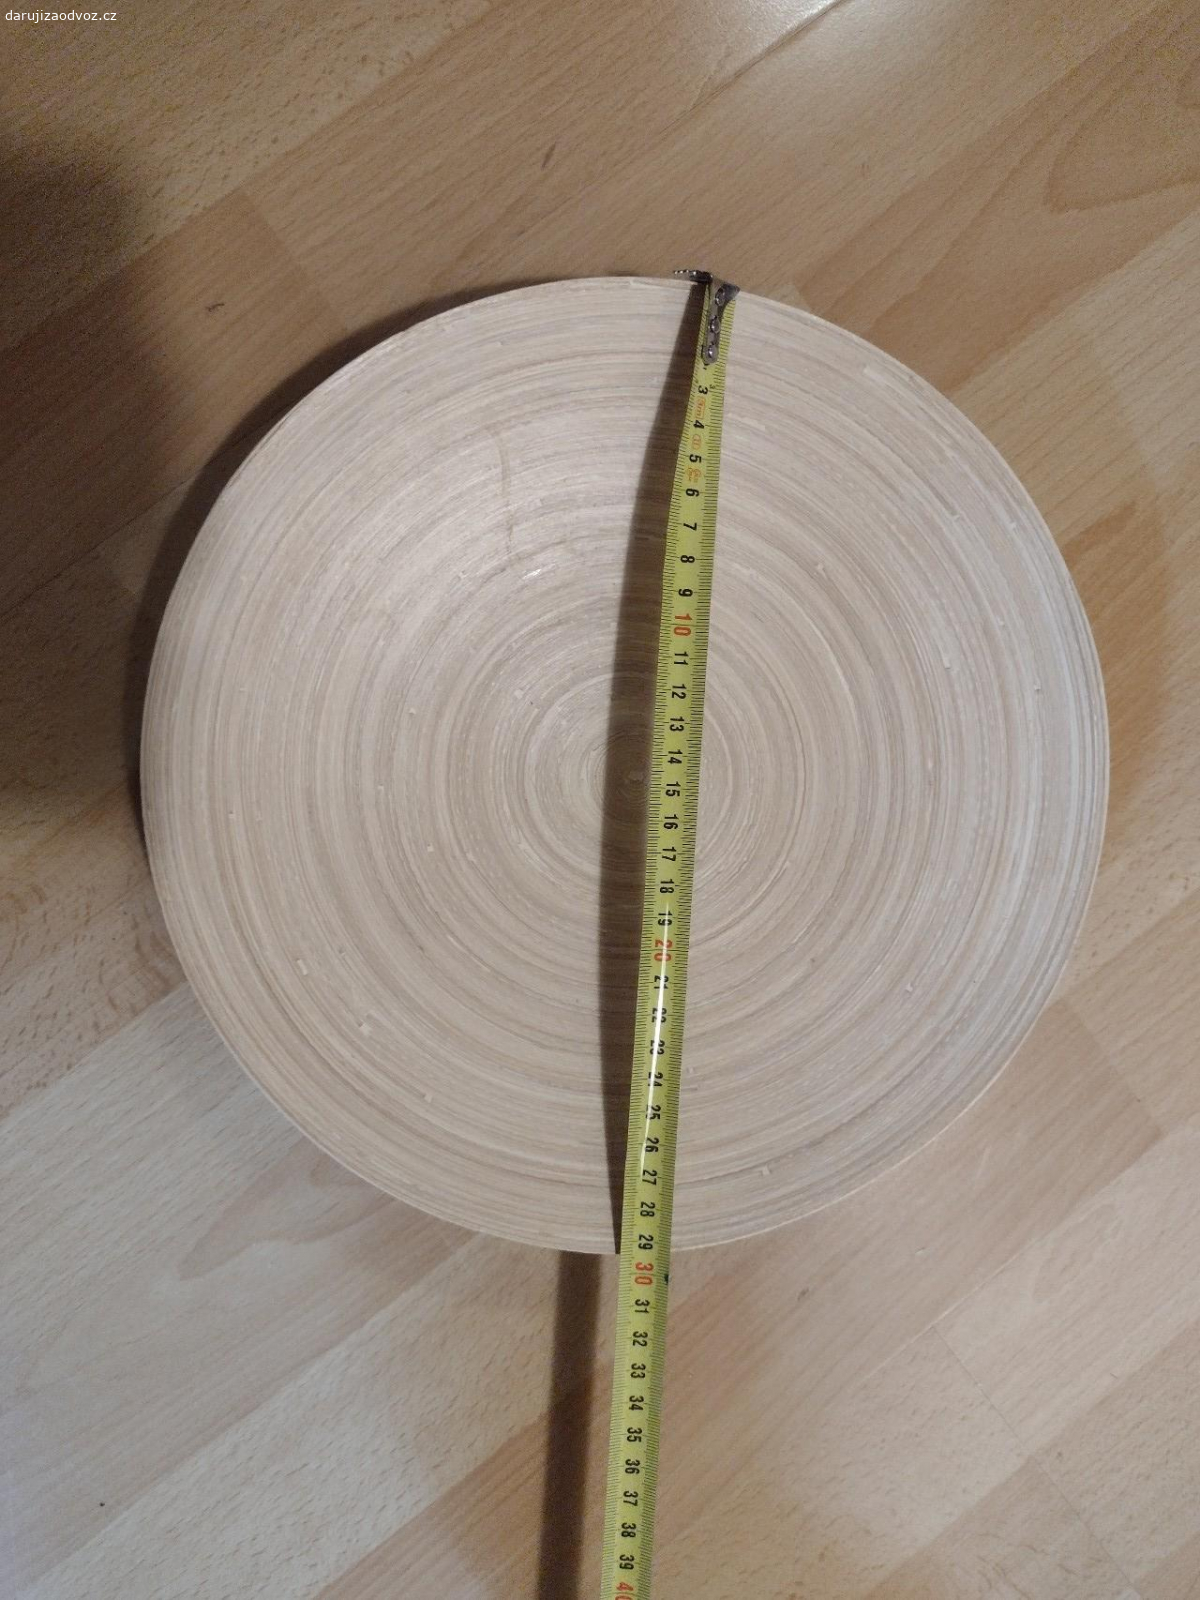 Bambusový talíř. Původně koupený v IKEA. Neodolný vůči vodu, takže buď na dekorace nebo ovoce nebo něco takového. Rozměr viz fotografie